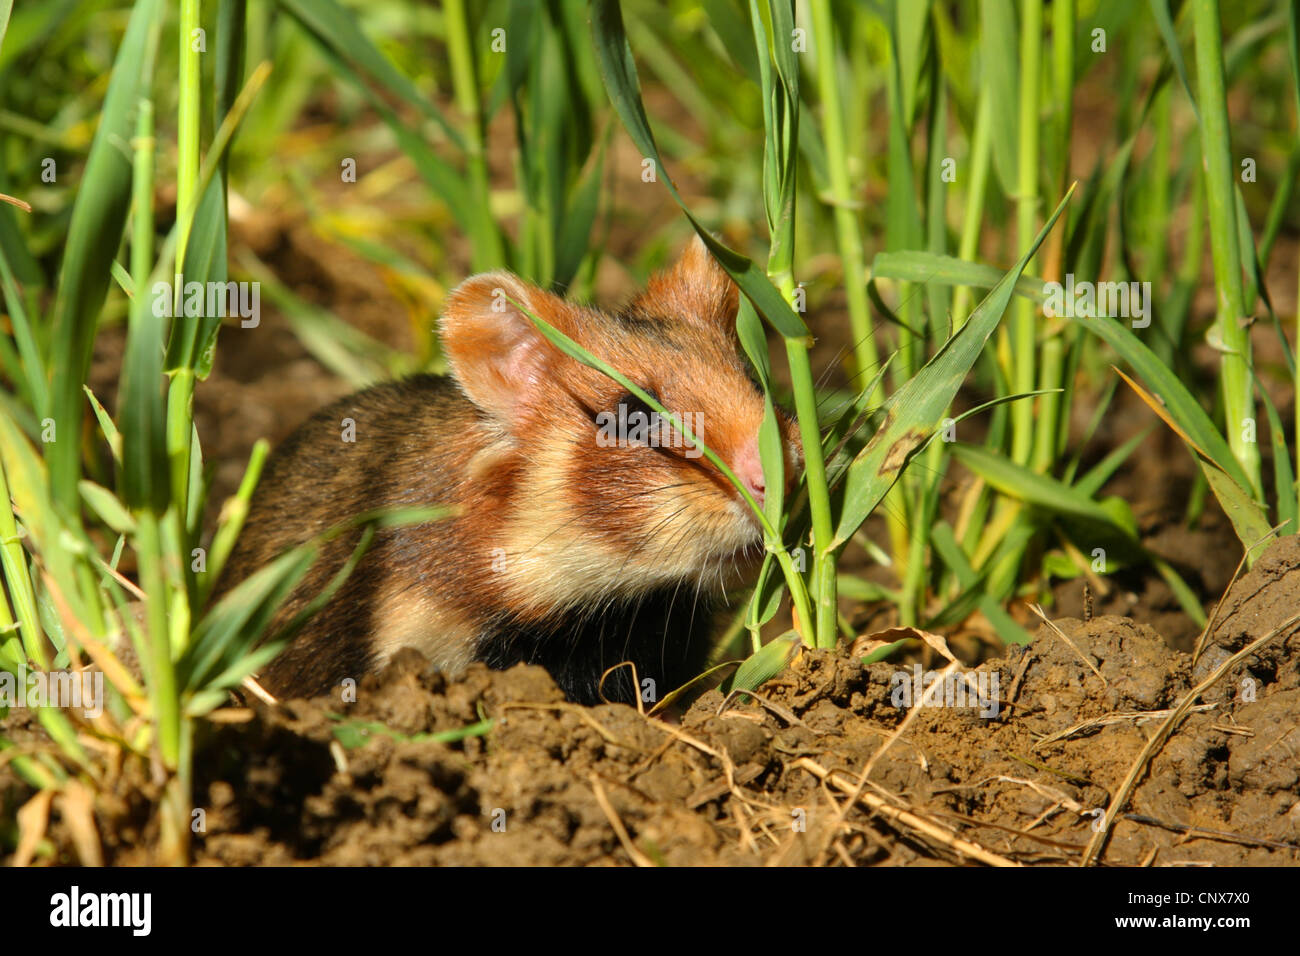 Hamster commun, black-bellied grand hamster (Cricetus cricetus), homme dans un champ de maïs, Allemagne Banque D'Images